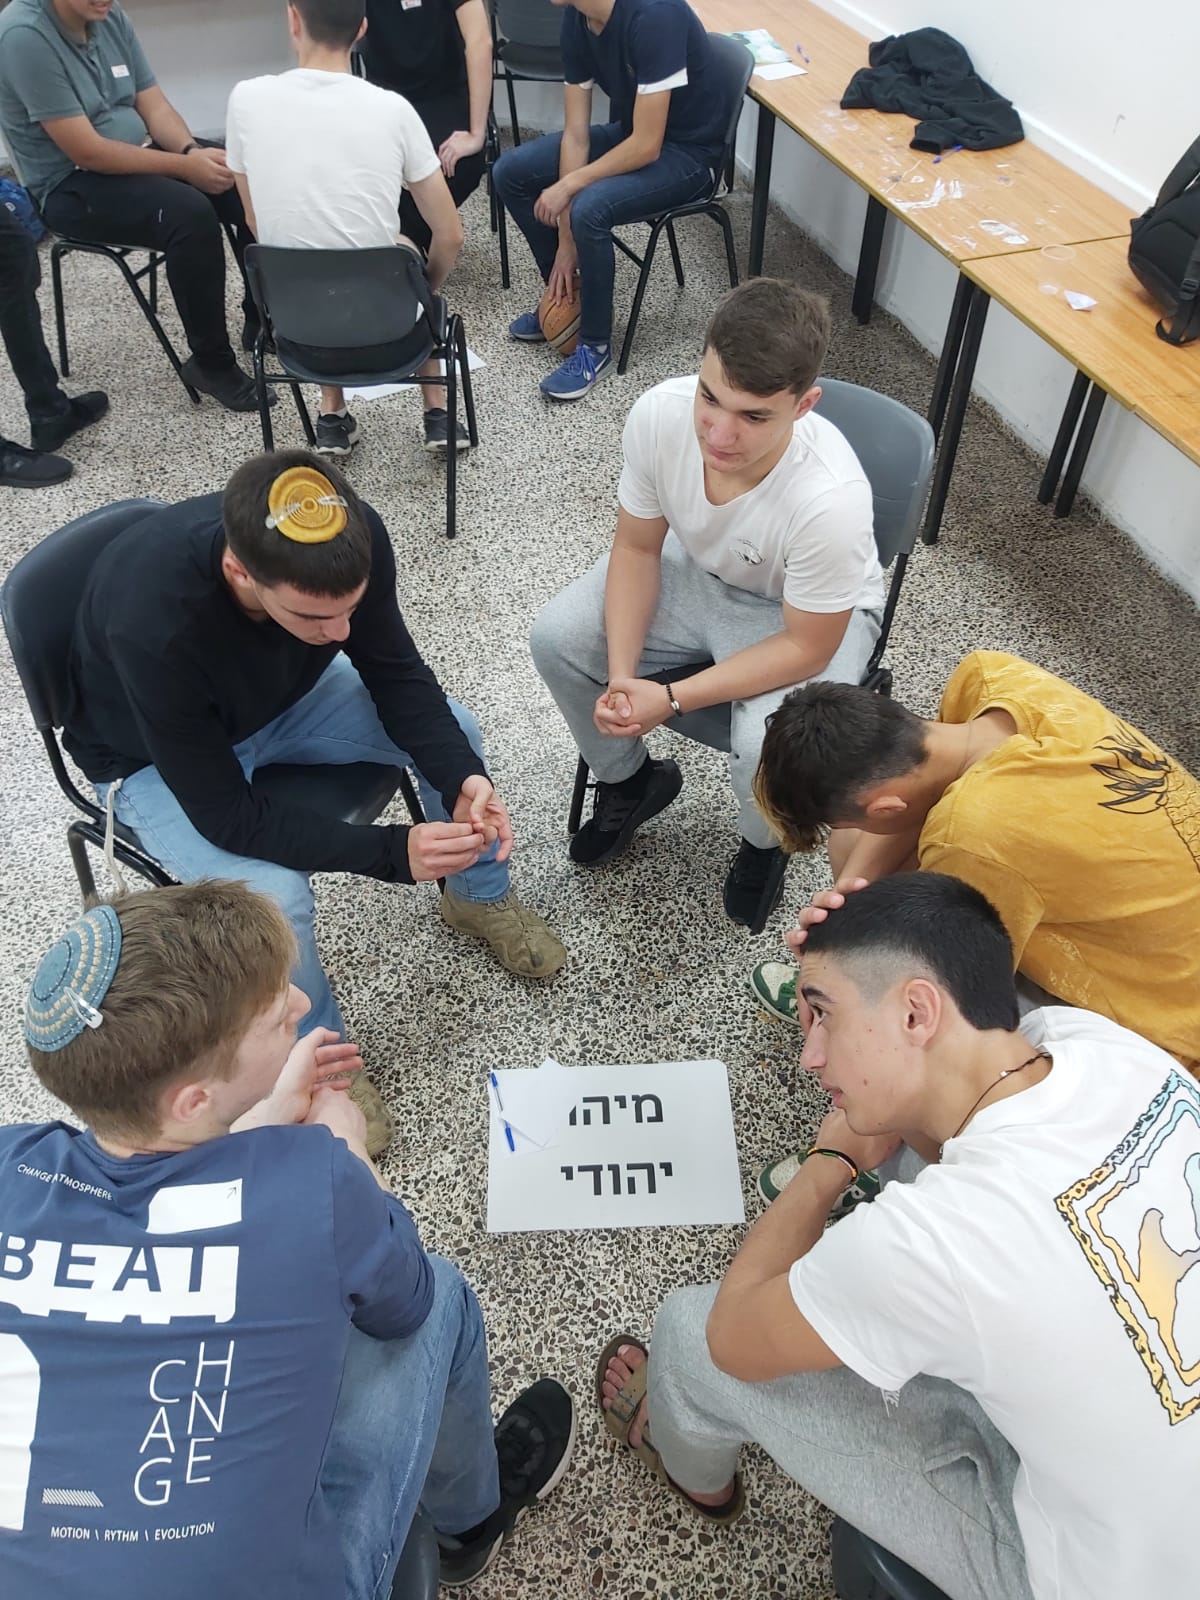 תרבות יהודית ישראלית - להיות אזרח במדינת ישראל -פעילות לתלמידי בתי ספר